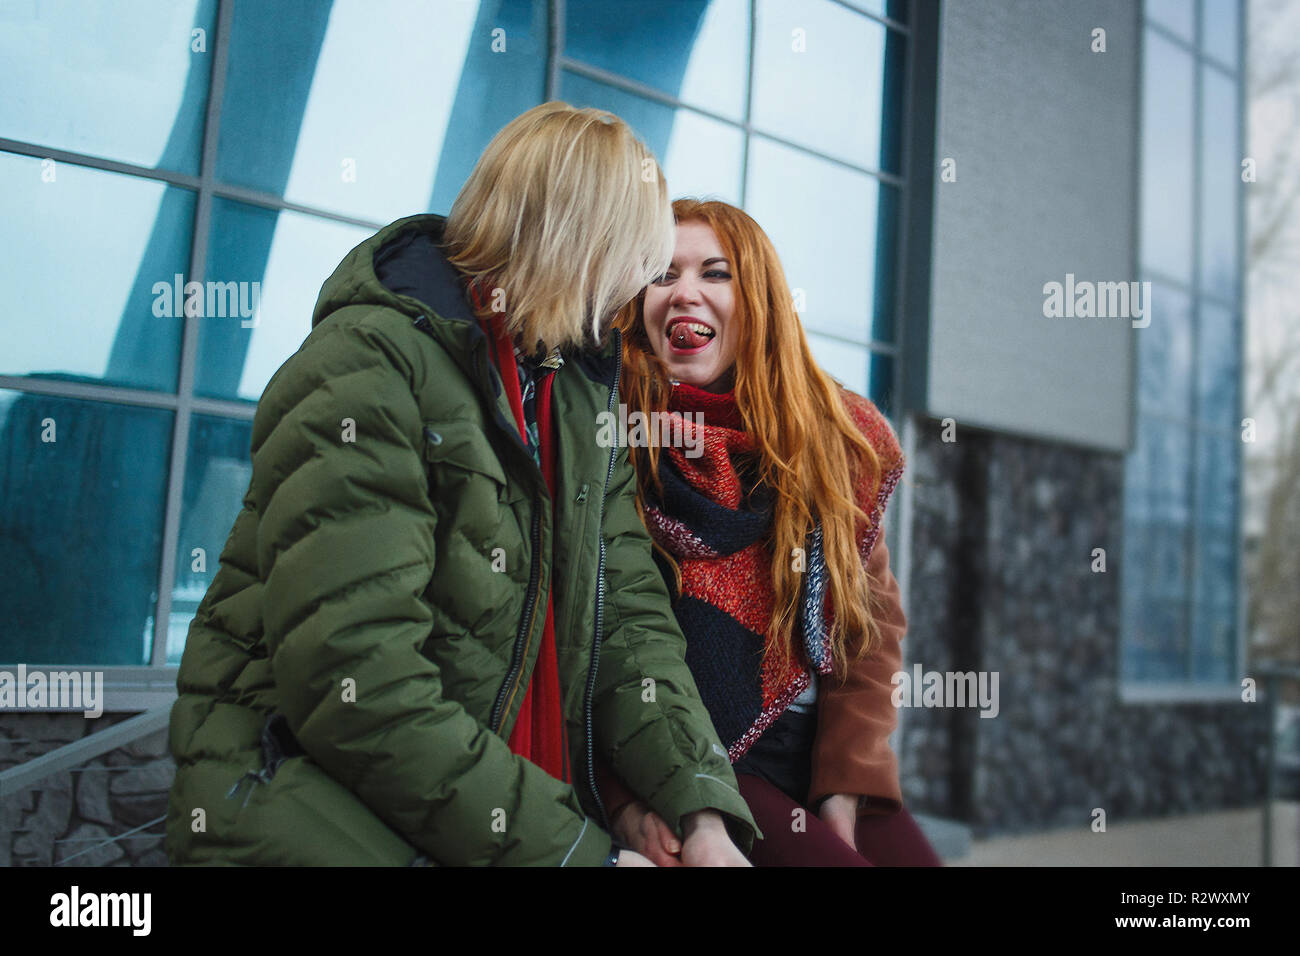 Junge europäische Paar Spaß im Winter im städtischen Hintergrund. Punks oder Hipster Style. Rothaarige Mädchen ist in roten Schal bekleidet, braunen Fell, kurze Shorts und Tights. Blasse Mann in Grün bolognese Jacke bekleidet, roter Schal und Jeans. Stockfoto